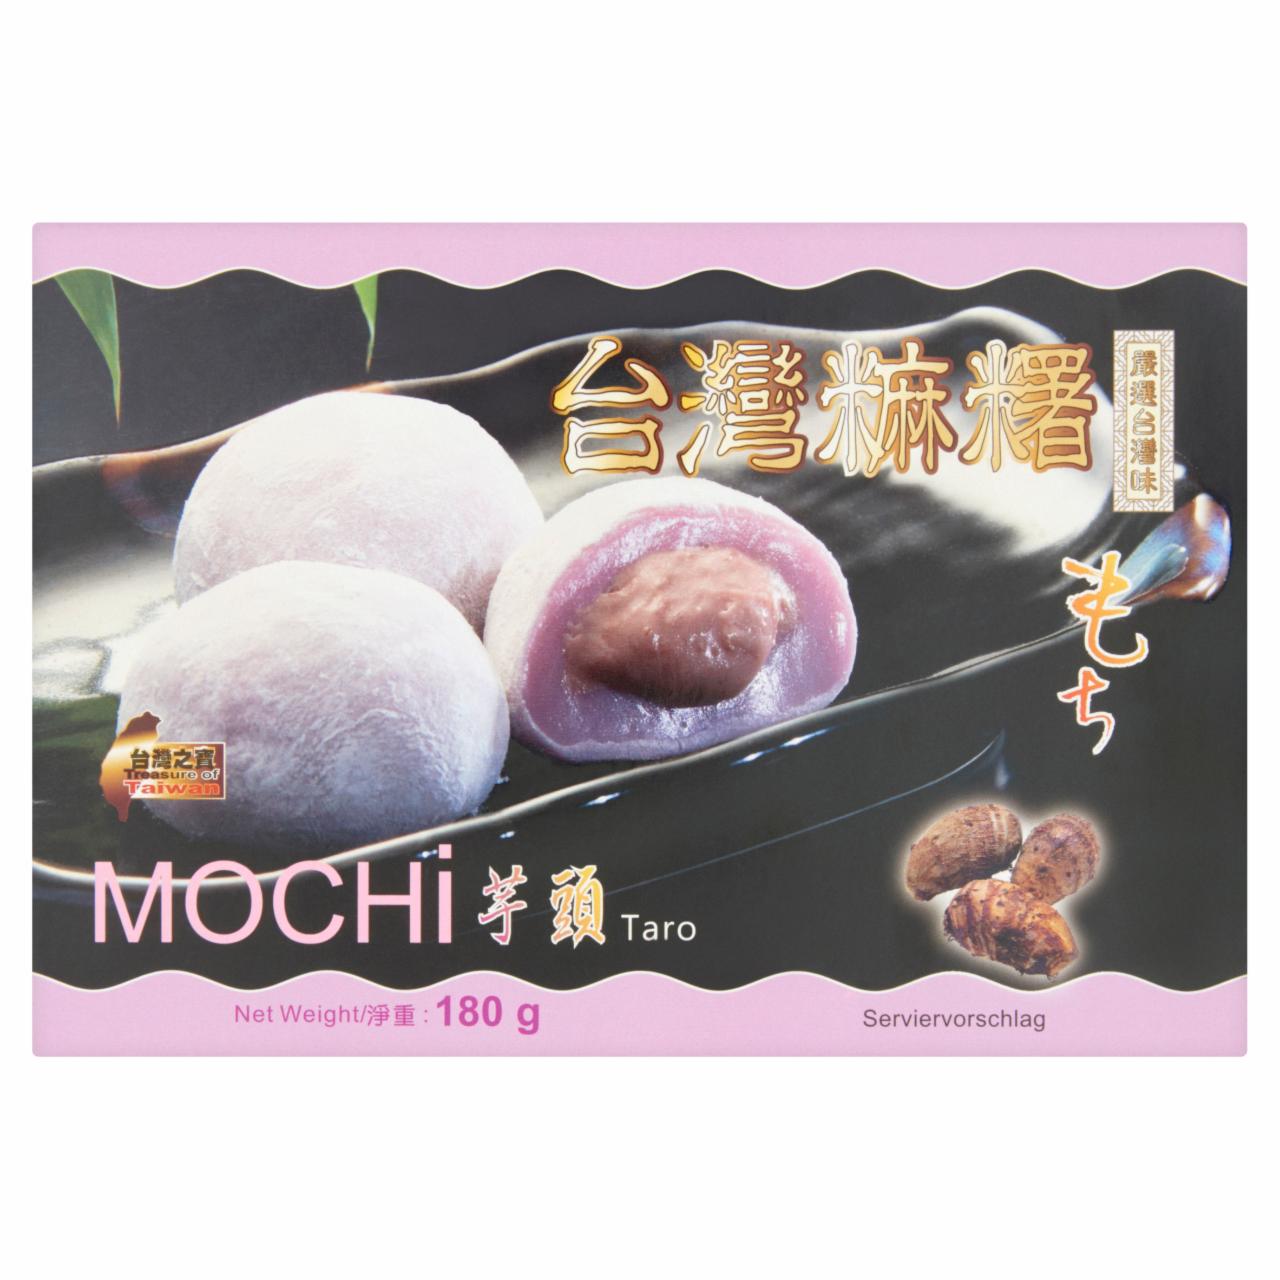 Képek - Táró gyökérrel ízesített ázsiai mochi édesség 180 g